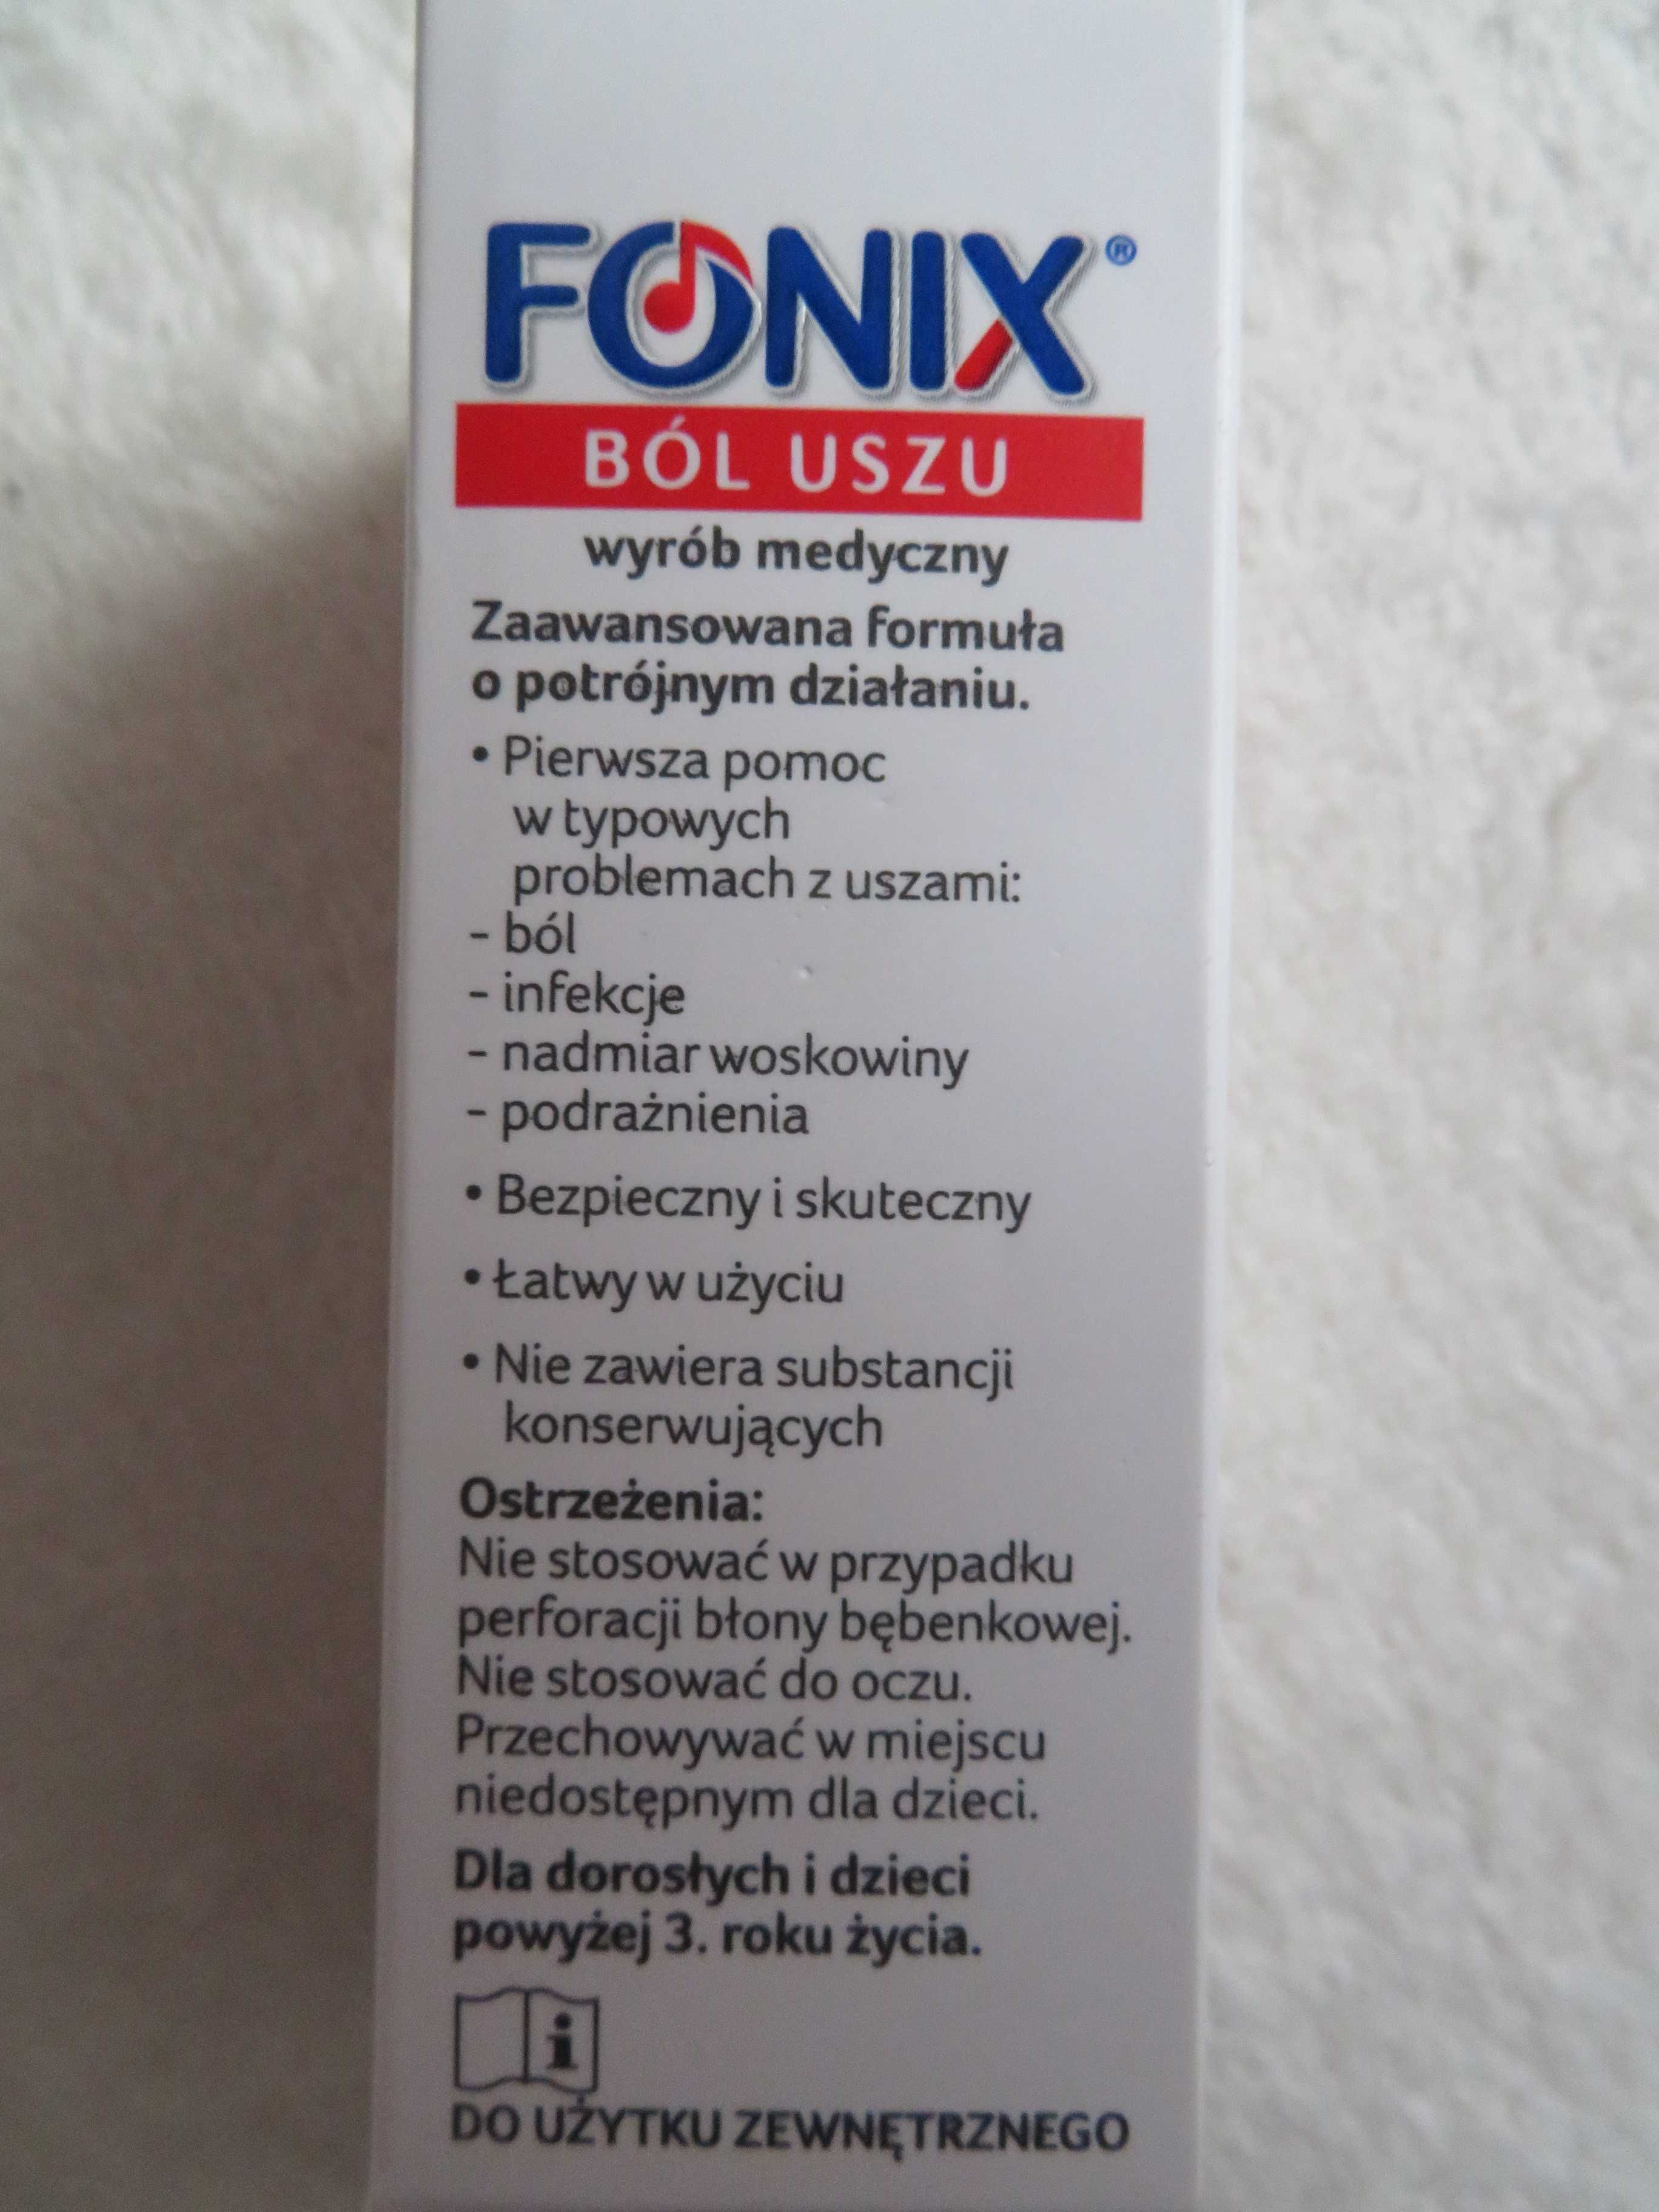 FONIX ból uszu spray 15 ml , NOWE, nie otwierane